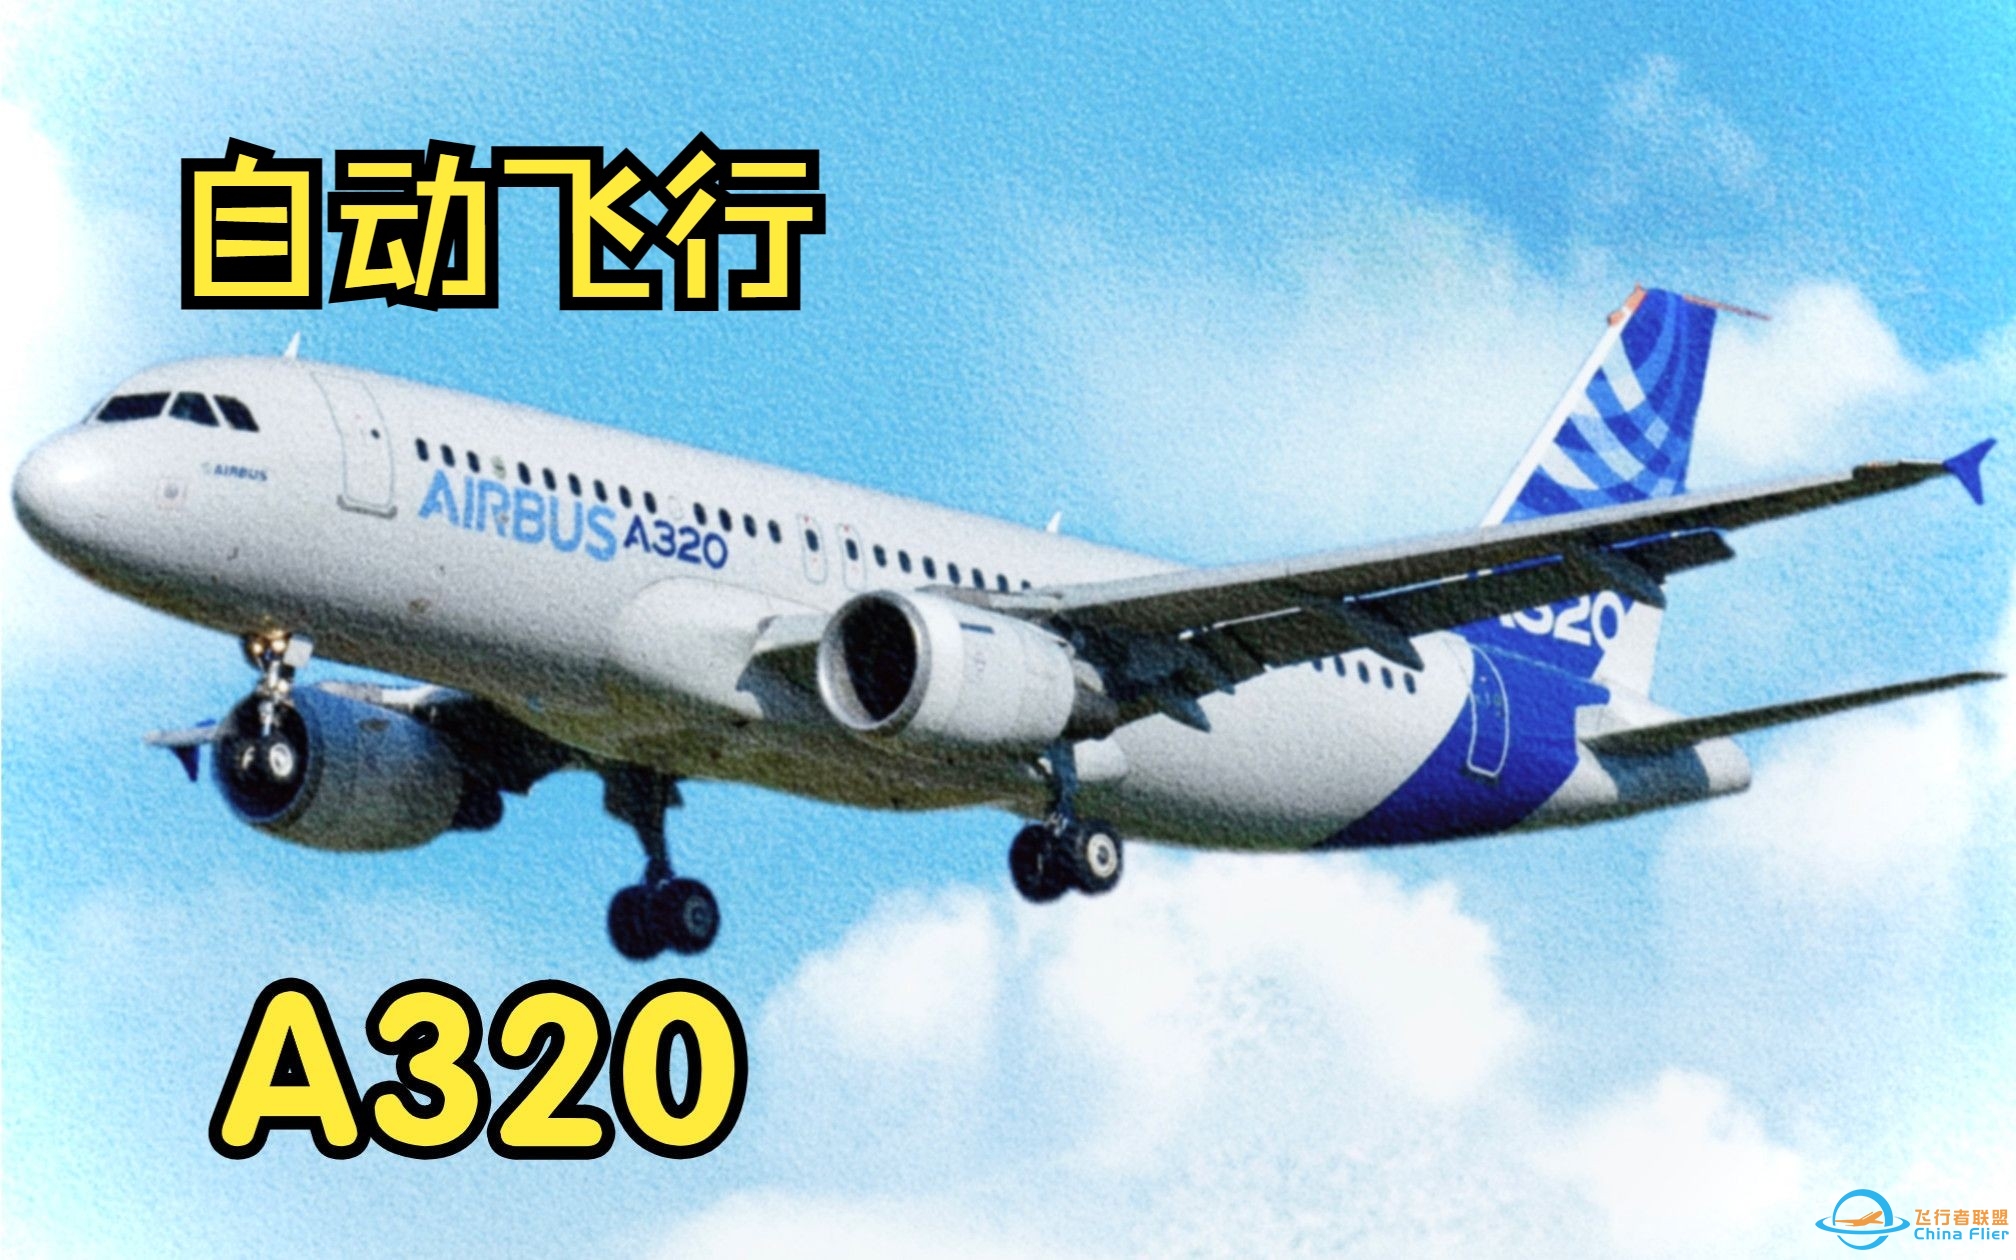 【飞行模拟从零学习空客A320】8.自动飞行系统-8764 